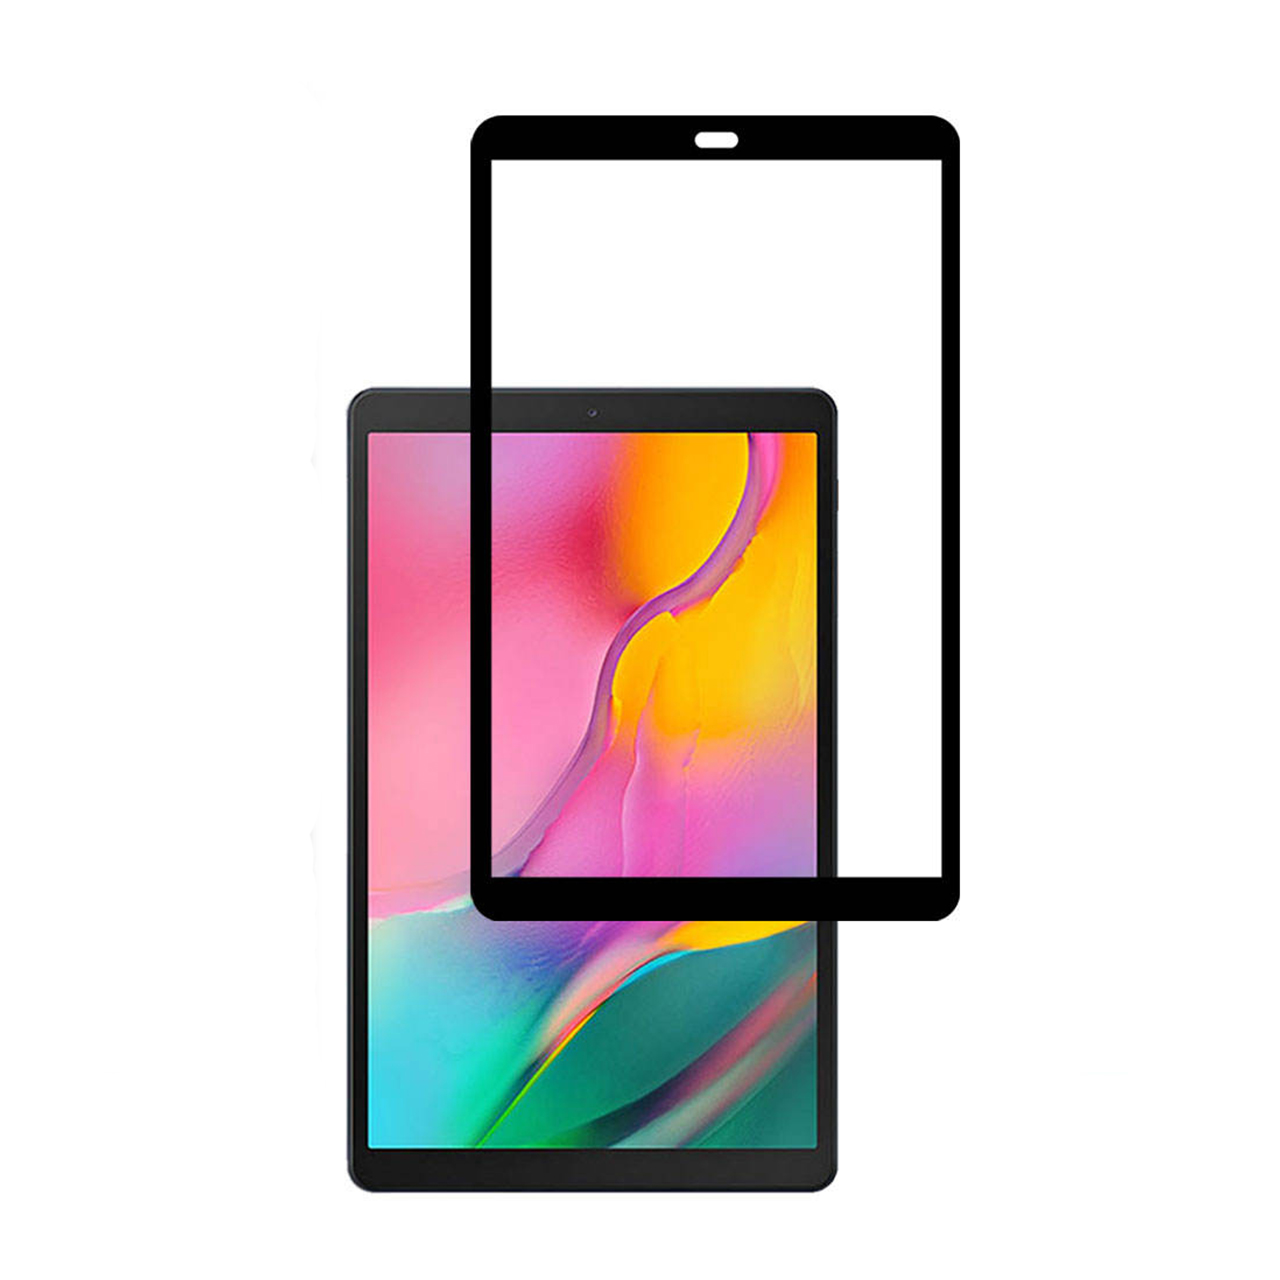 محافظ صفحه نمایش سرامیکی مدل 7s2 مناسب برای تبلت سامسونگ Galaxy Tab A 10.1 2019 / T510 / T515